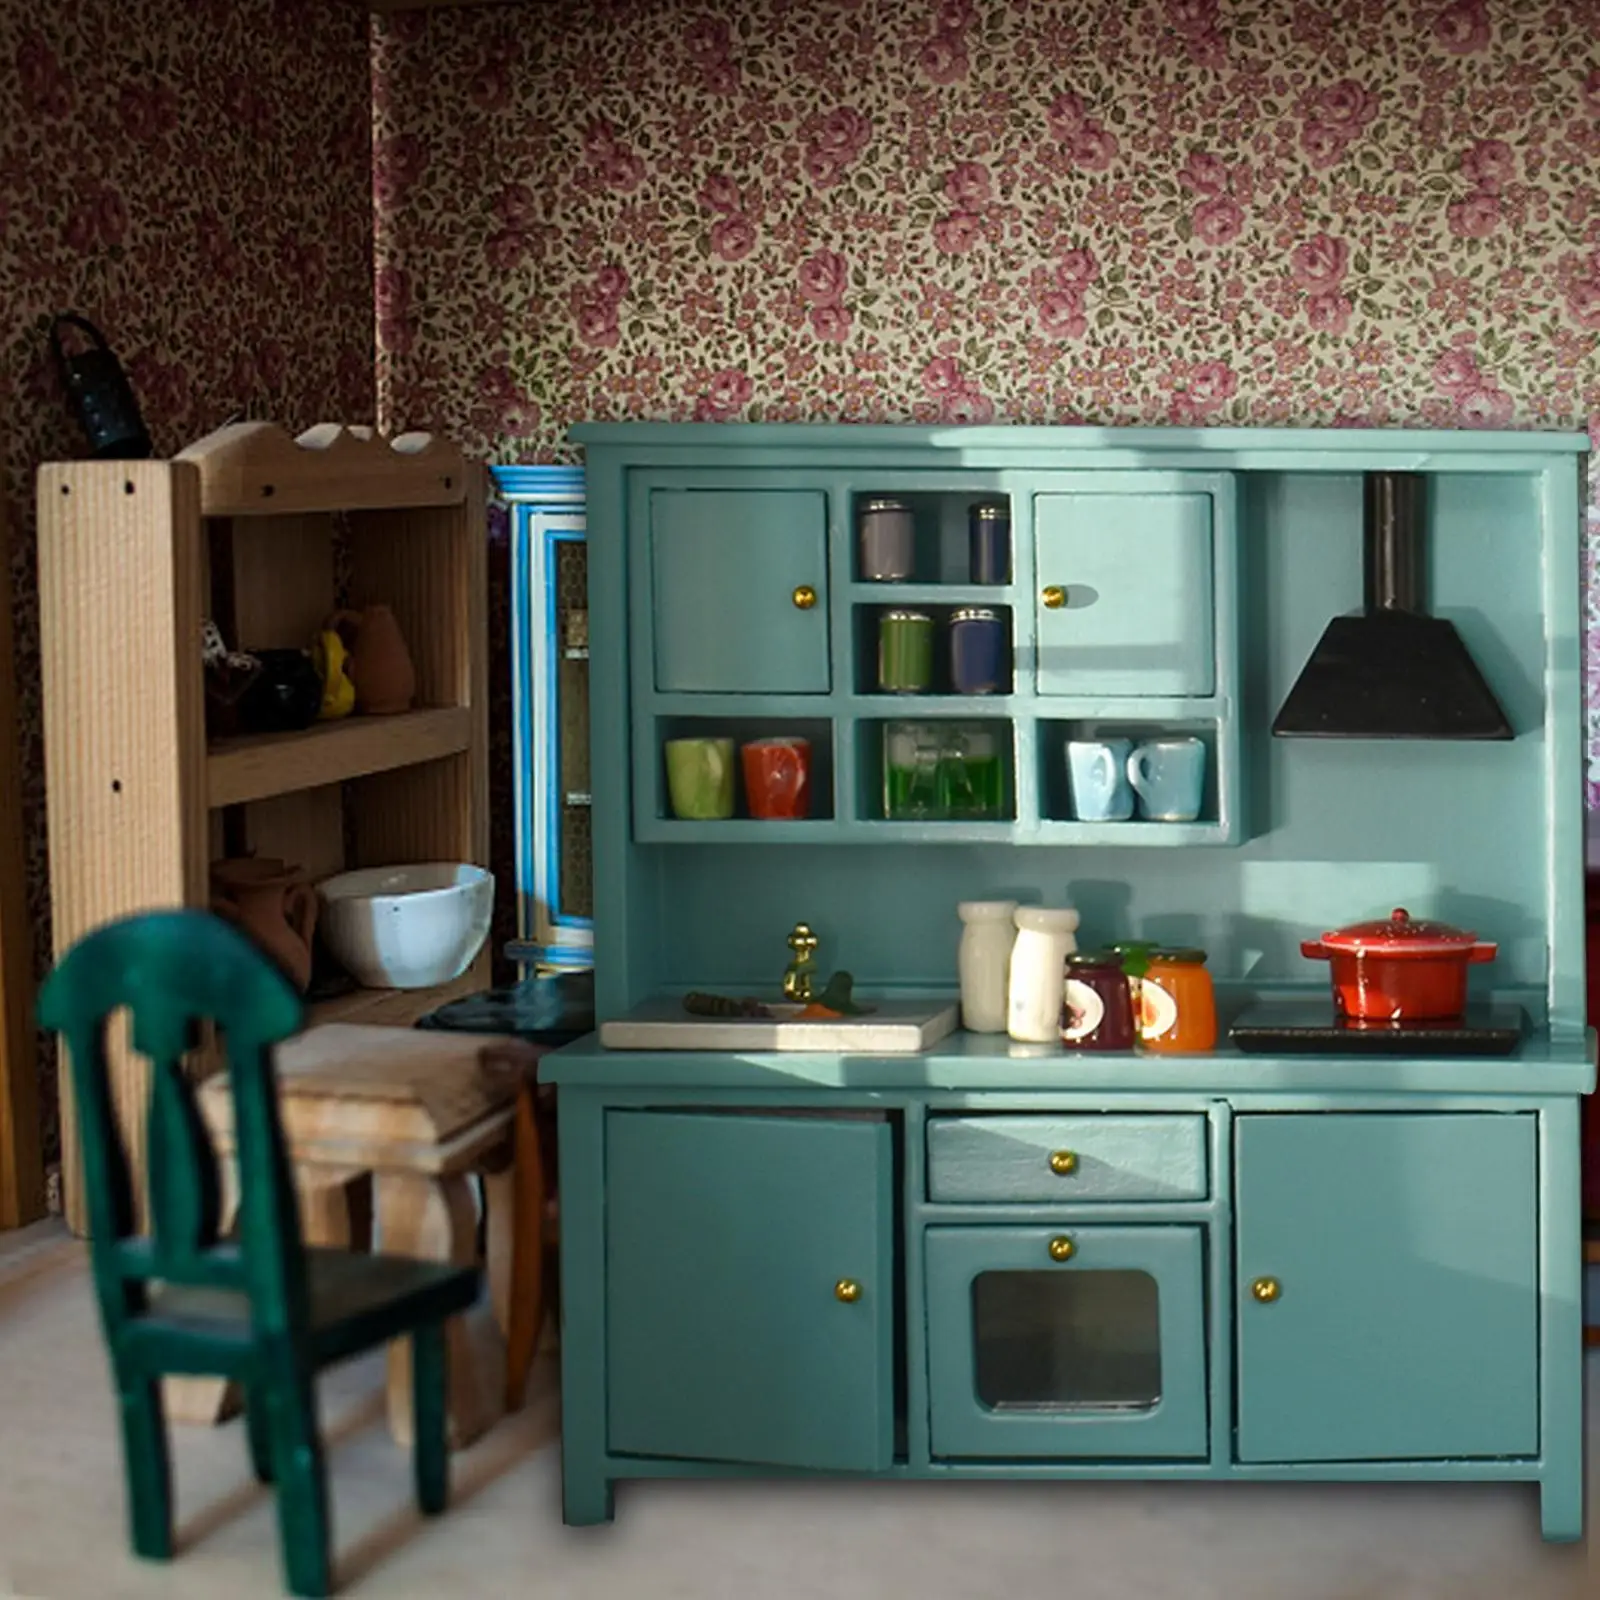 Mini Cabinet Furniture Dollhouse Kitchen Accessories for Micro Landscape